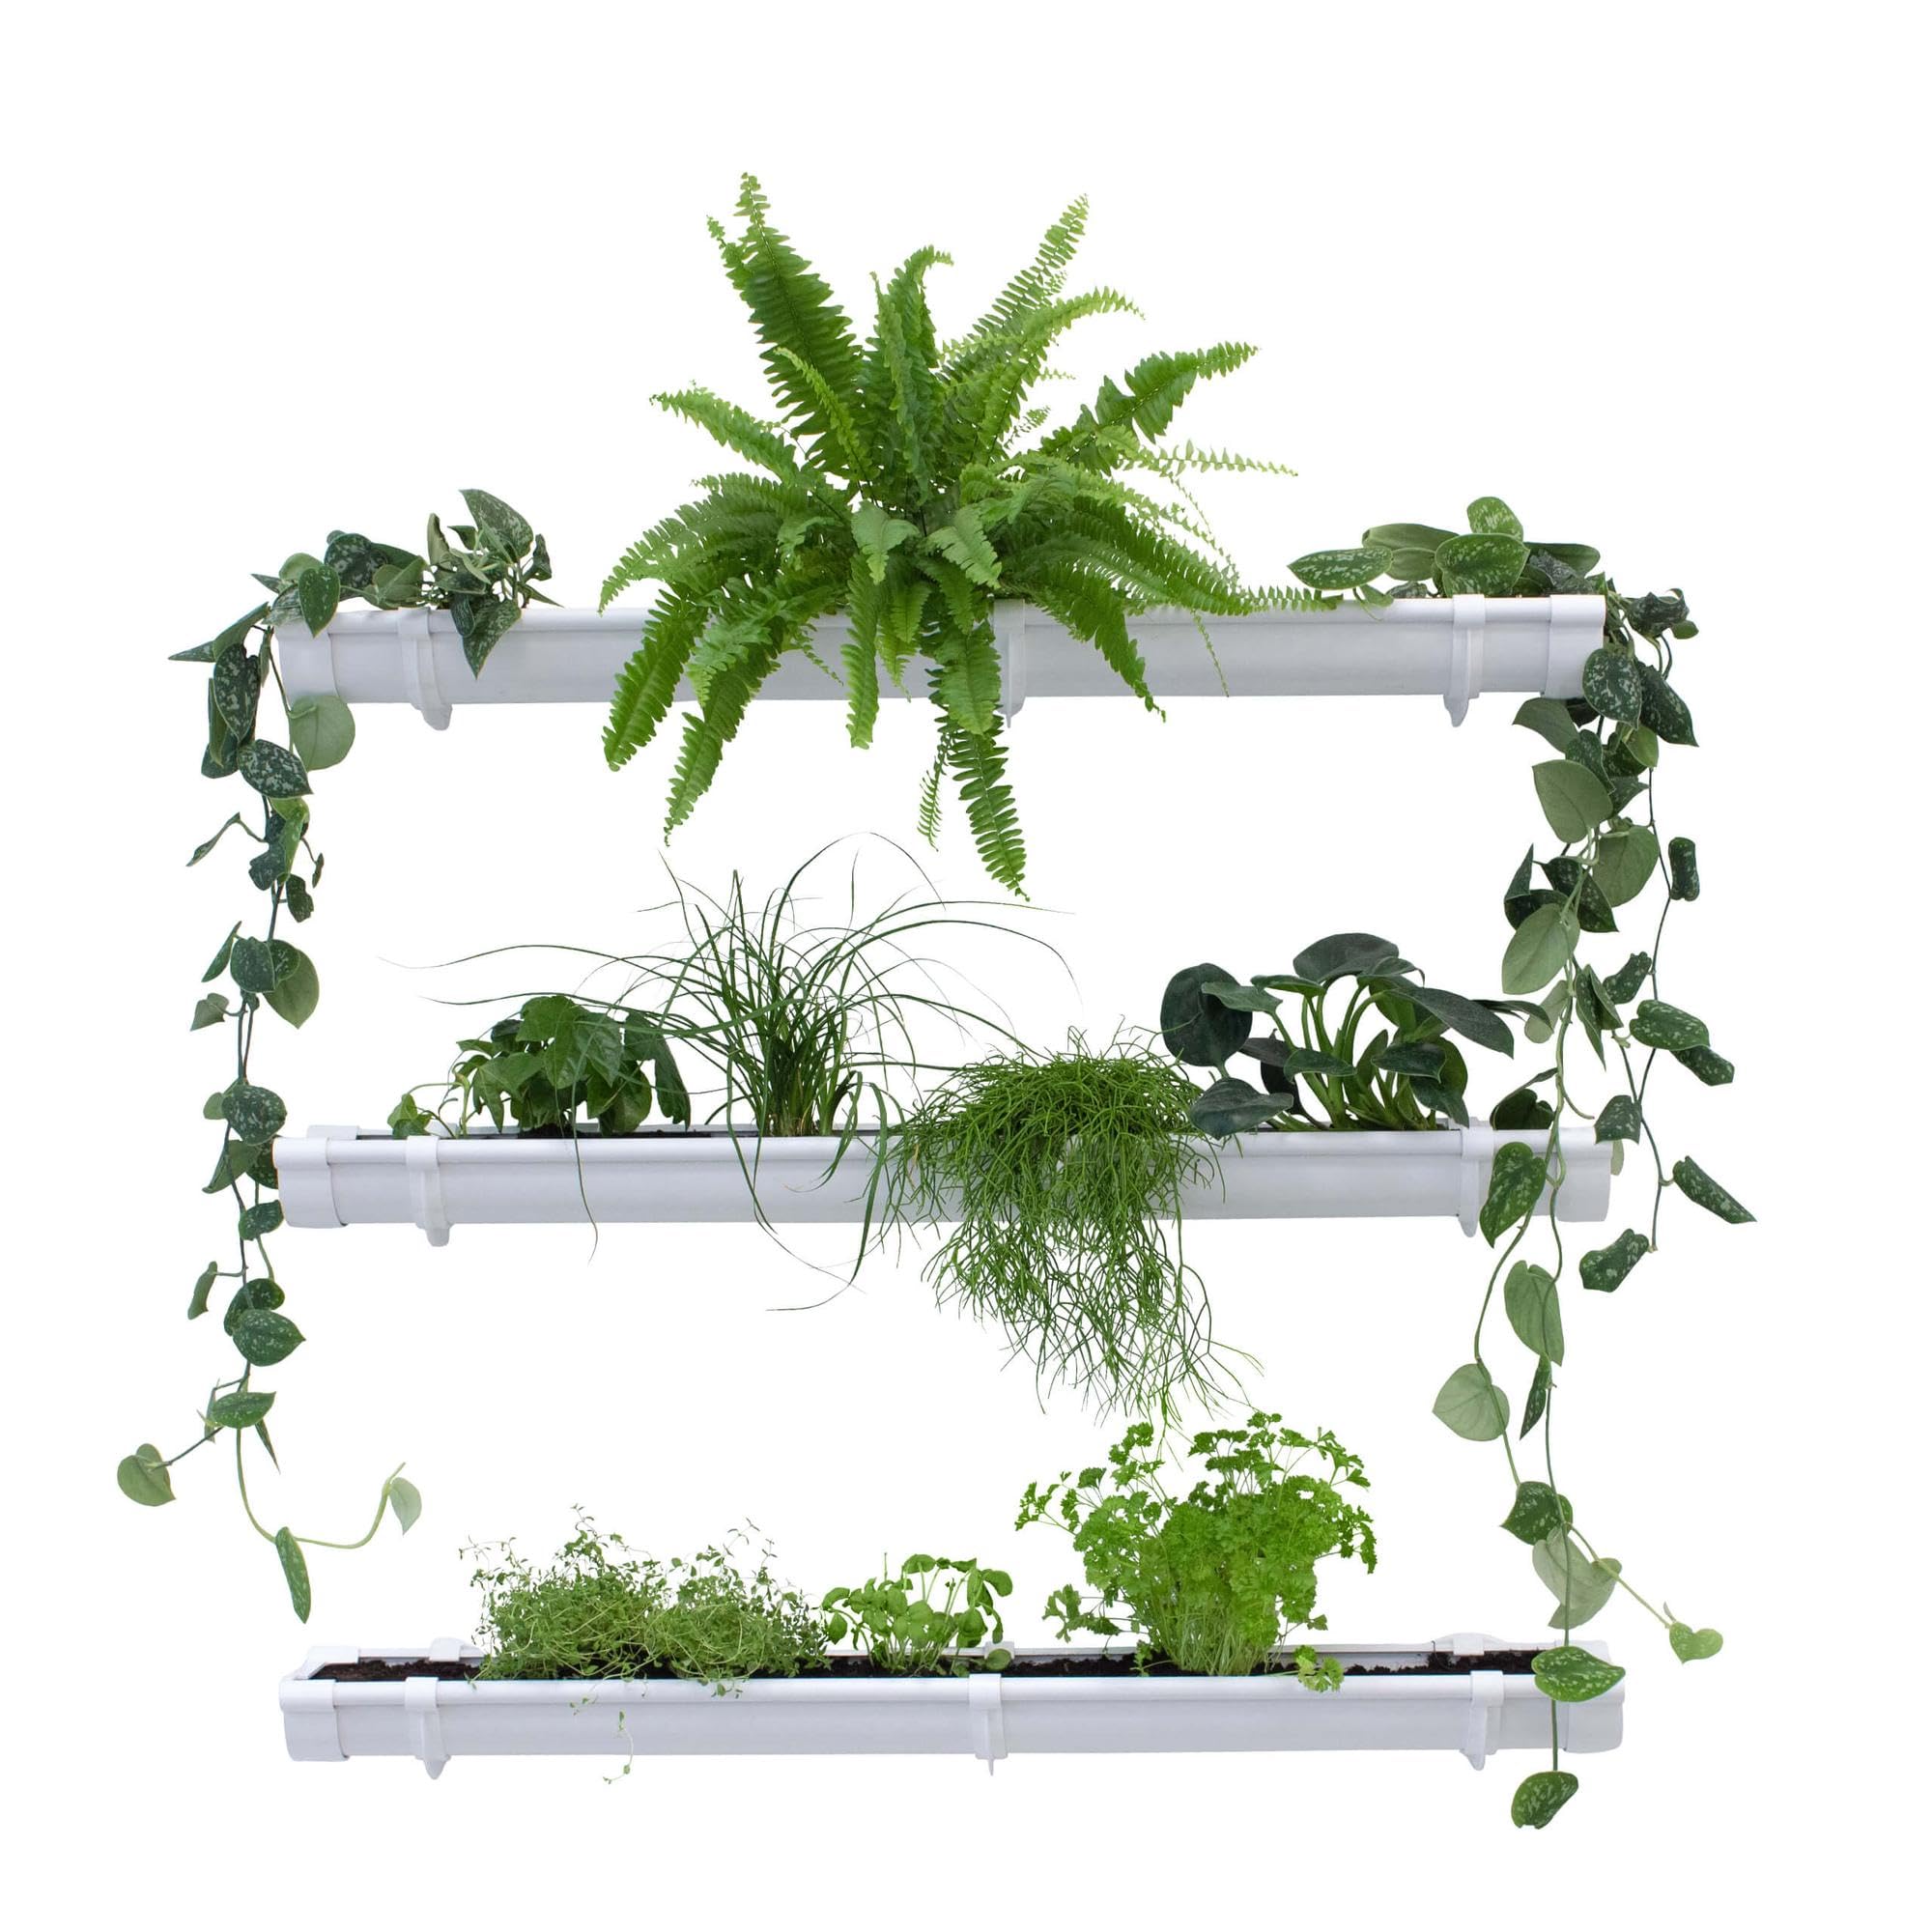 Grüne Pflanzenwand, Vertikaler Garten 3 x 1m Weiß, Platzsparende Gartengestaltung, Pflanzenregal für Innen und Außen